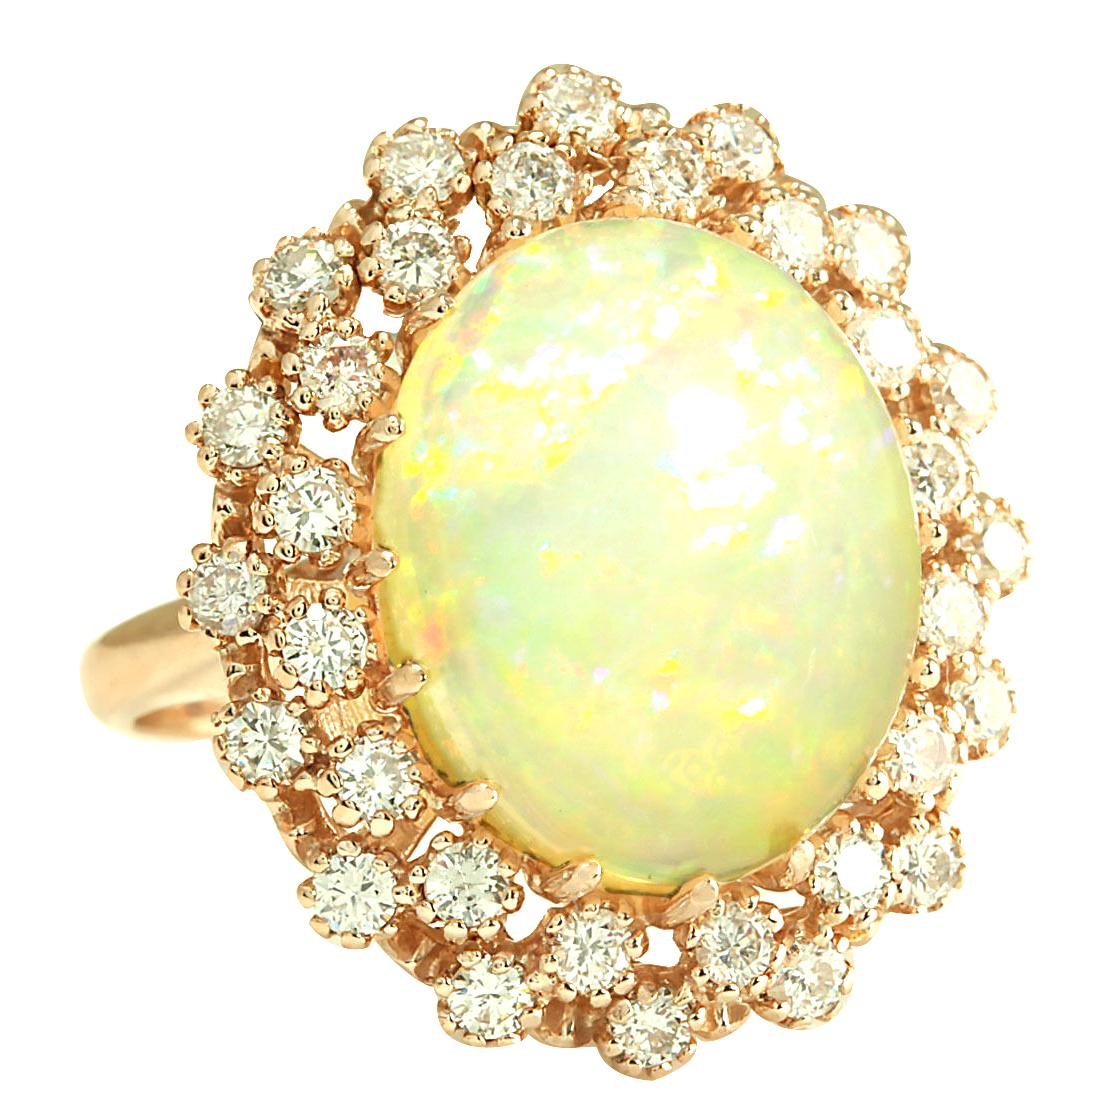 8,11 Karat Natürlicher Opal 14 Karat Rose Gold Diamant Ring
Gestempelt: 14K Rose Gold
Gesamtgewicht des Rings: 10,0 Gramm
Das Gesamtgewicht des natürlichen Opals beträgt 6,81 Karat (Maße: 16,00x14,00 mm)
Farbe: Multicolor
Gewicht der Diamanten: